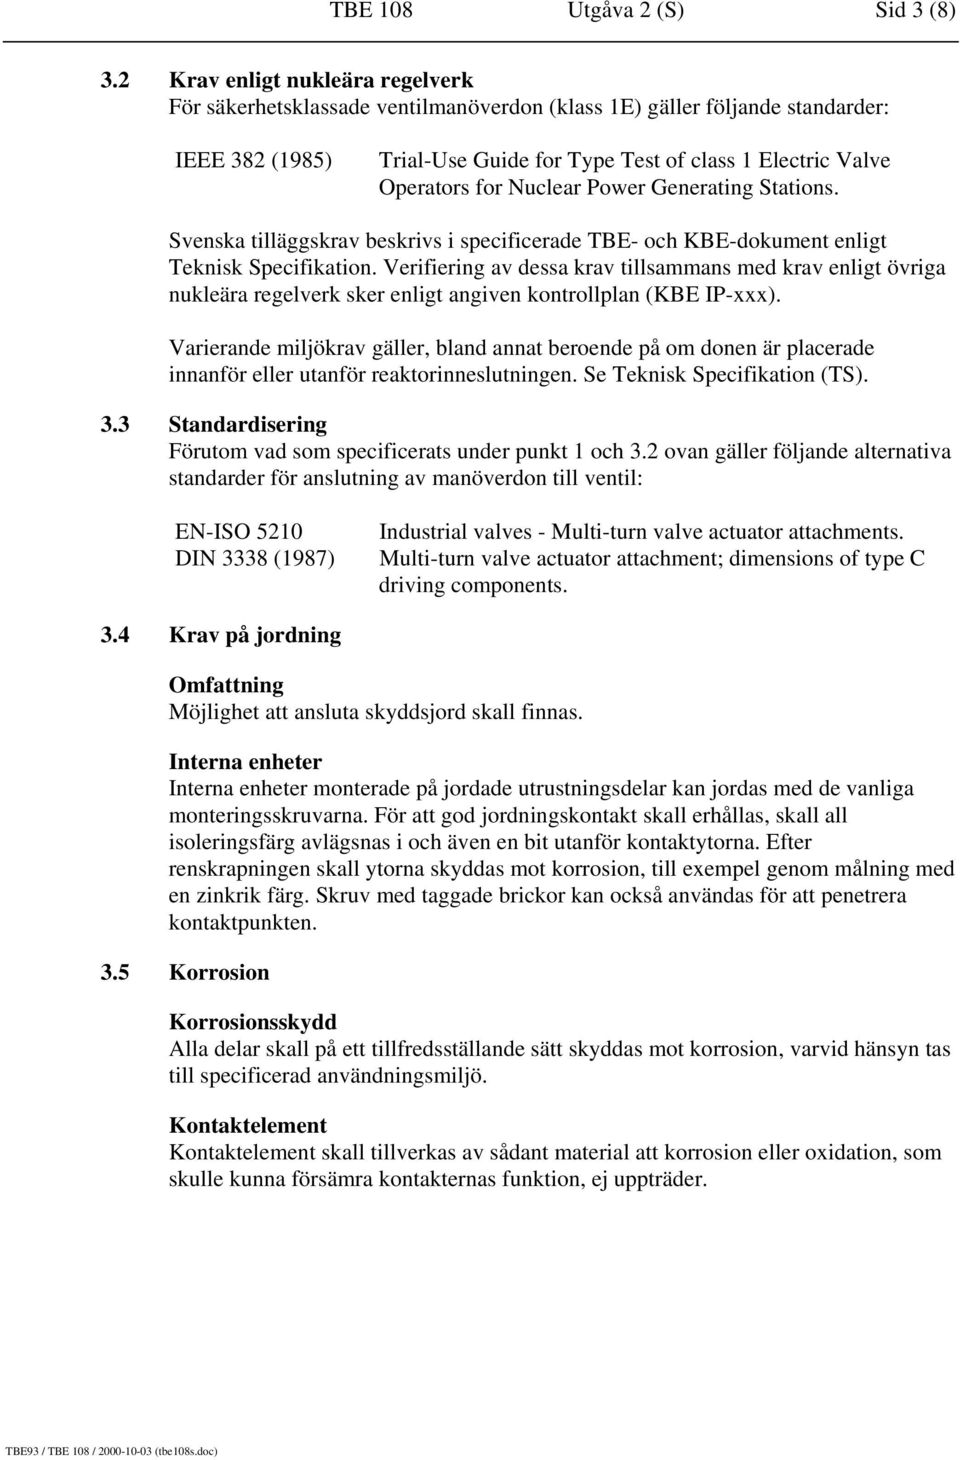 Nuclear Power Generating Stations. Svenska tilläggskrav beskrivs i specificerade TBE- och KBE-dokument enligt Teknisk Specifikation.